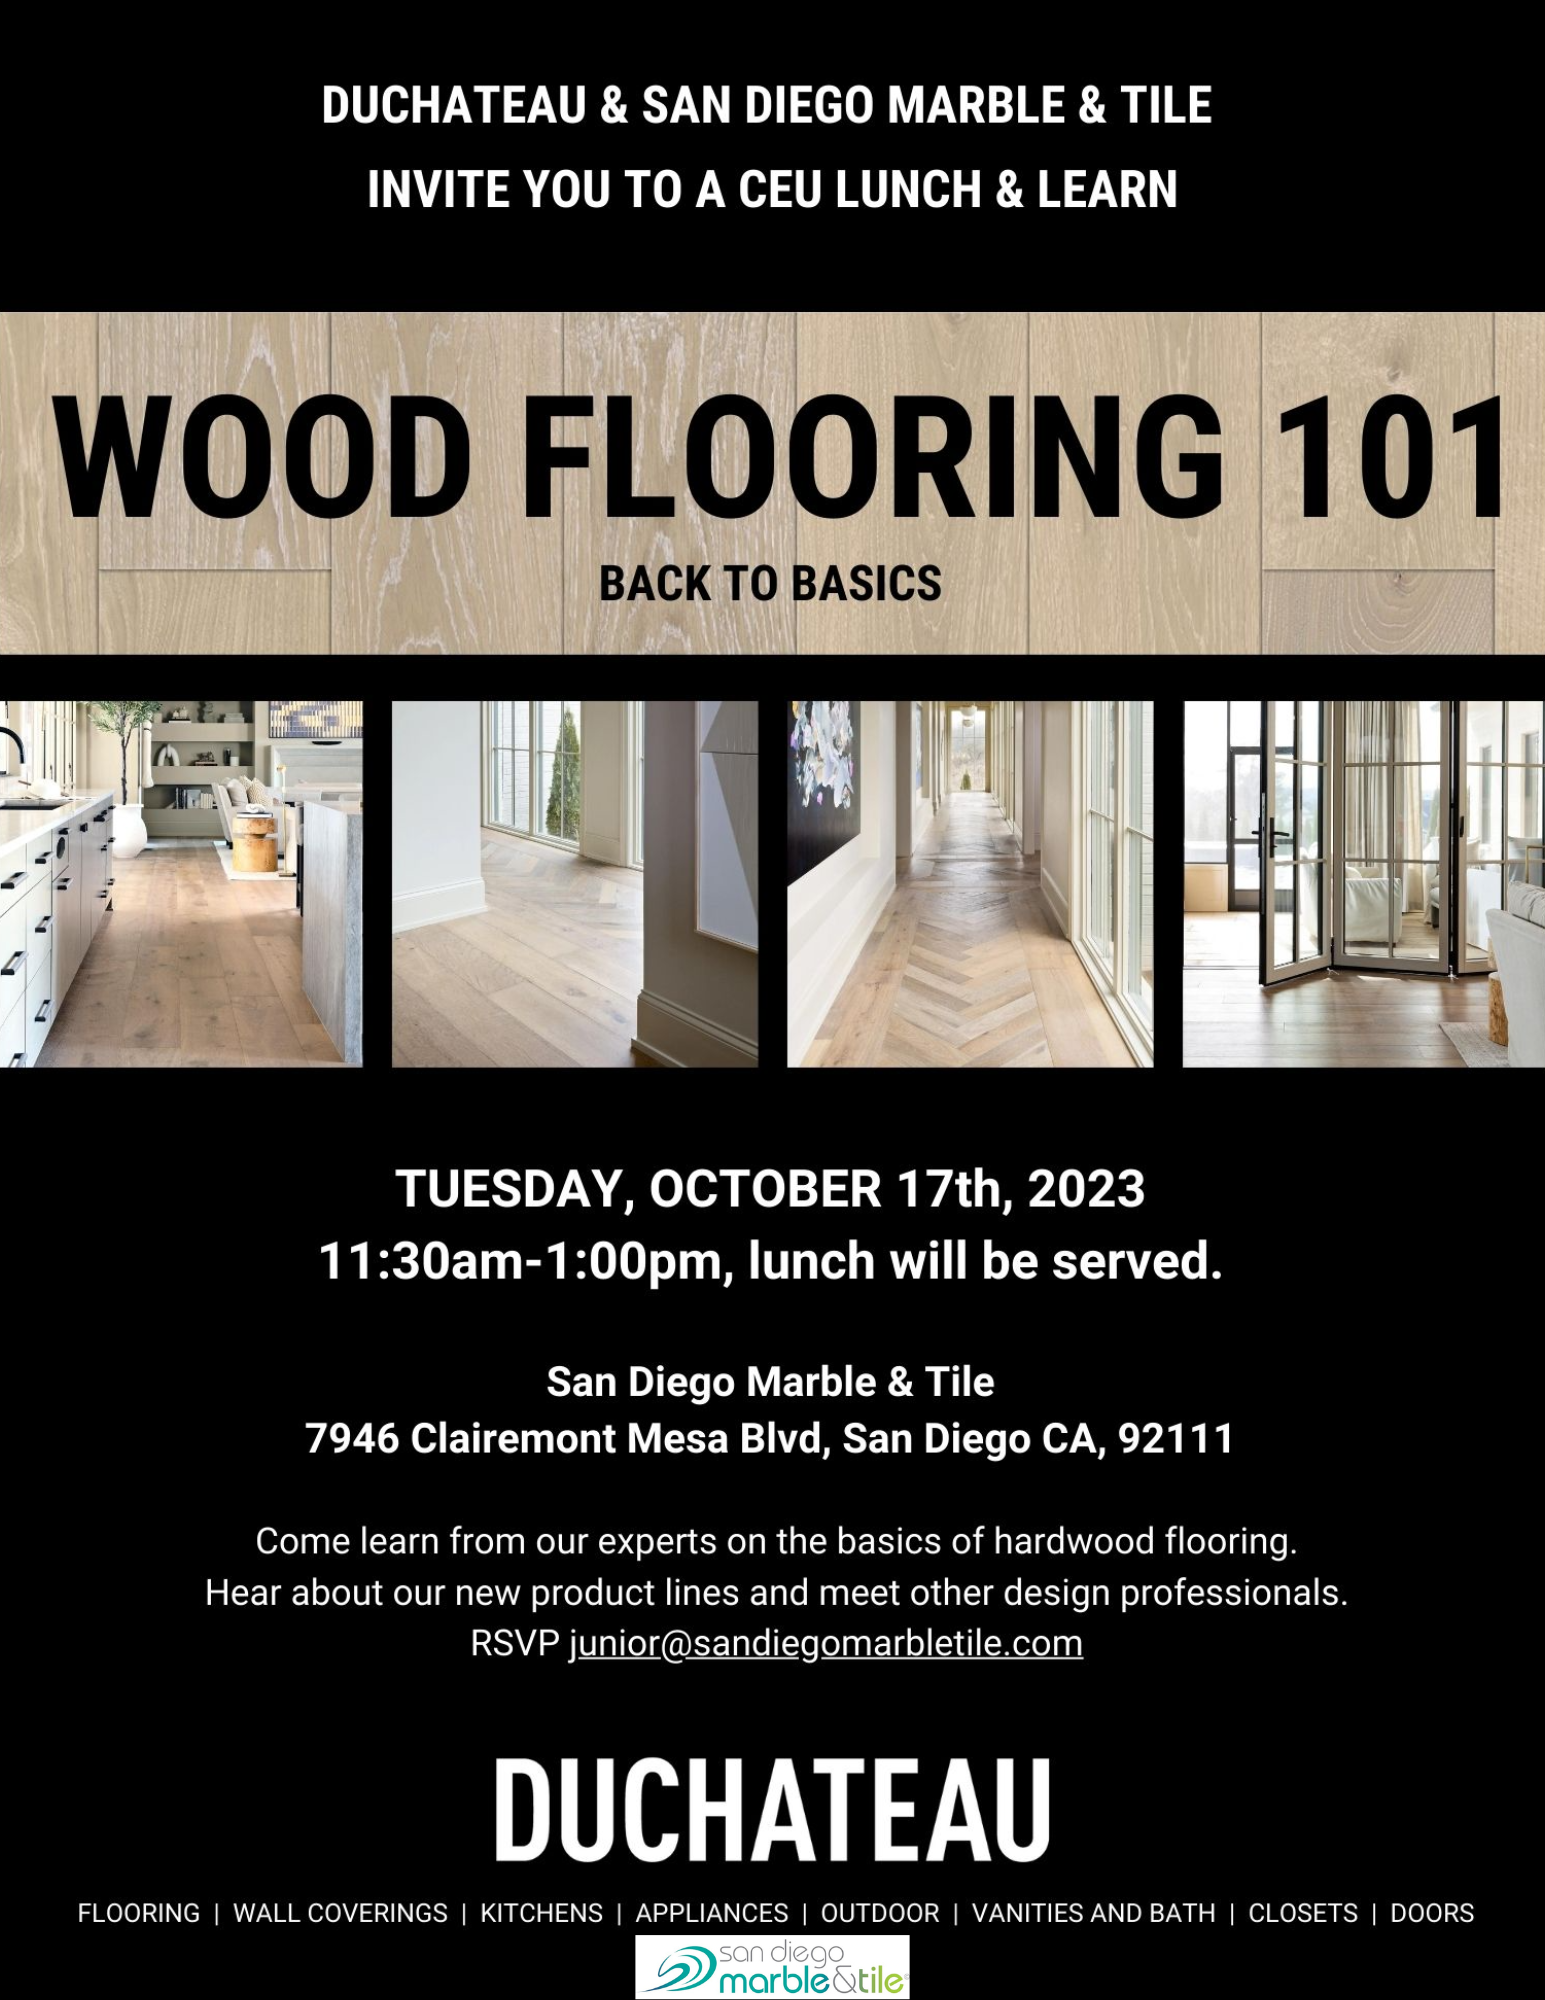 Wood Flooring 101 - Back to Basics